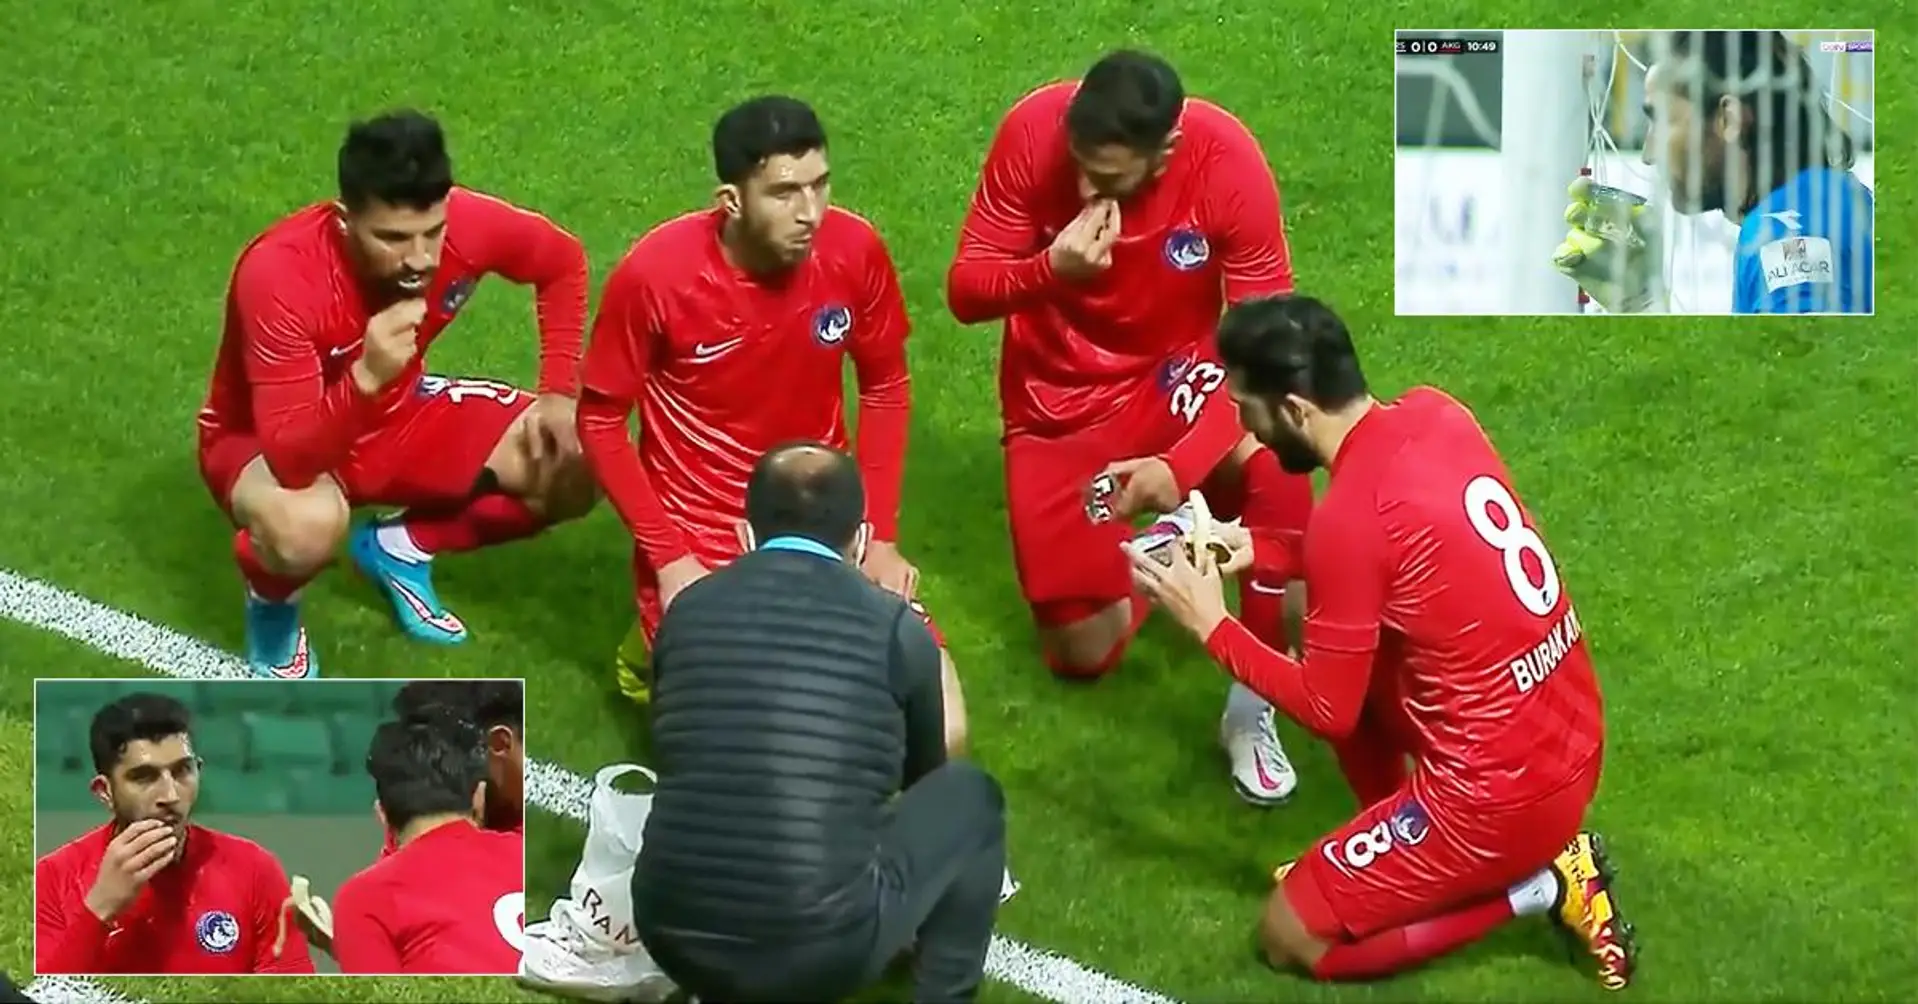 Le match de football en Turquie s'est arrêté pour que les joueurs puissent faire leur Ramadan rapidement - la vidéo devient virale